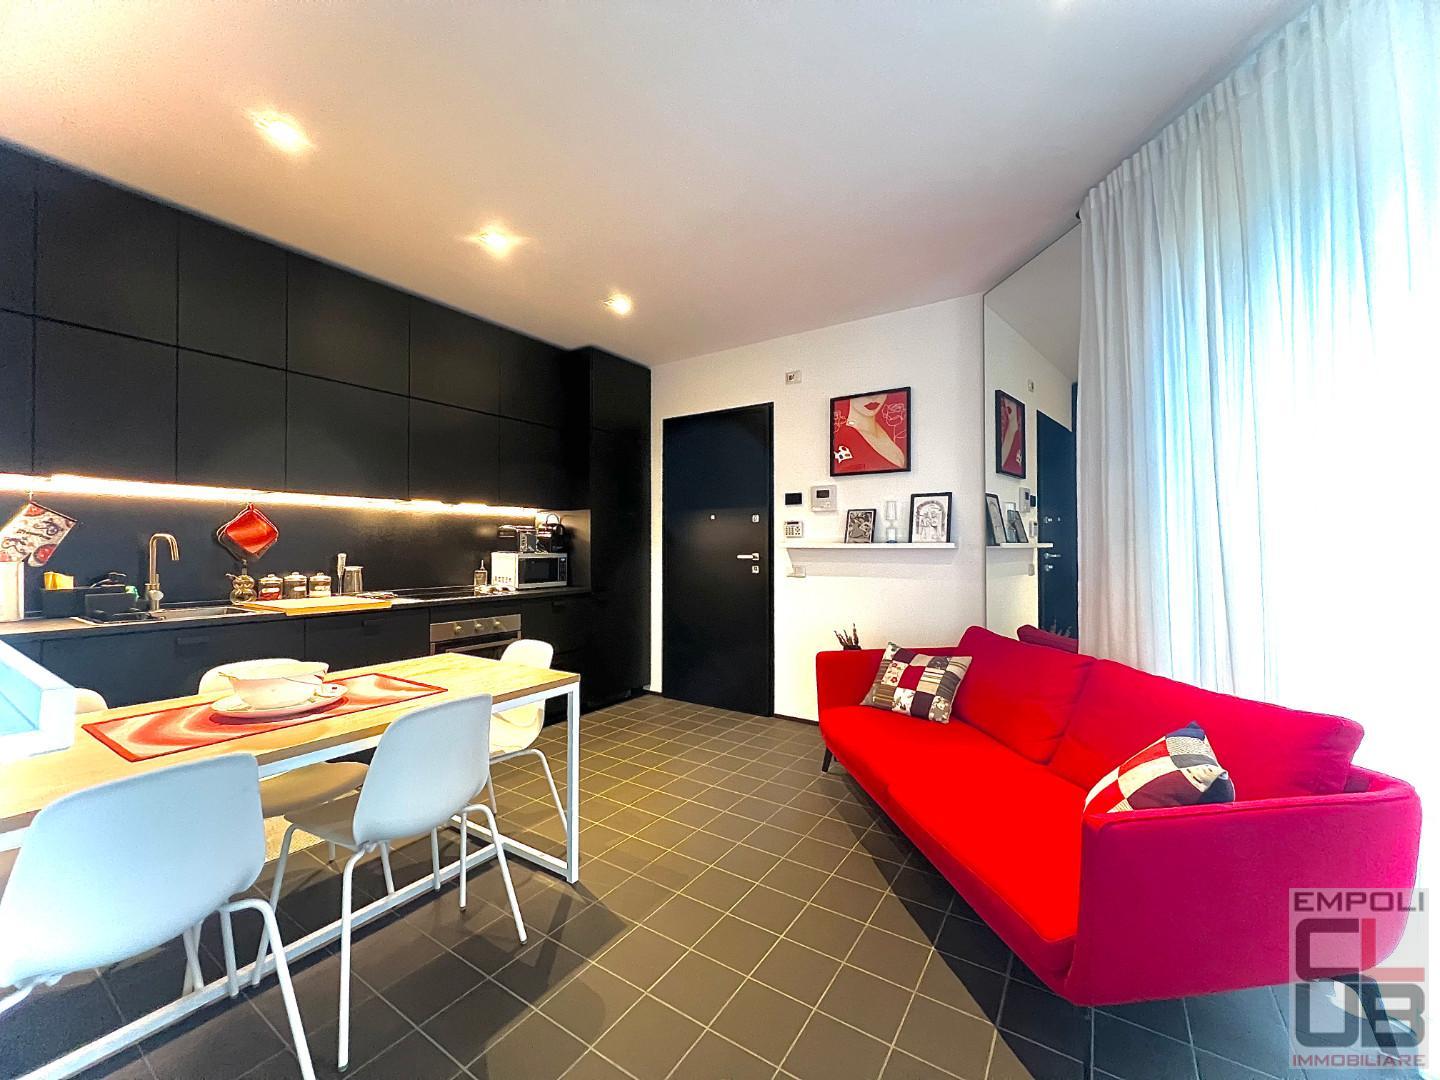 Apartment for sale in Empoli (FI)